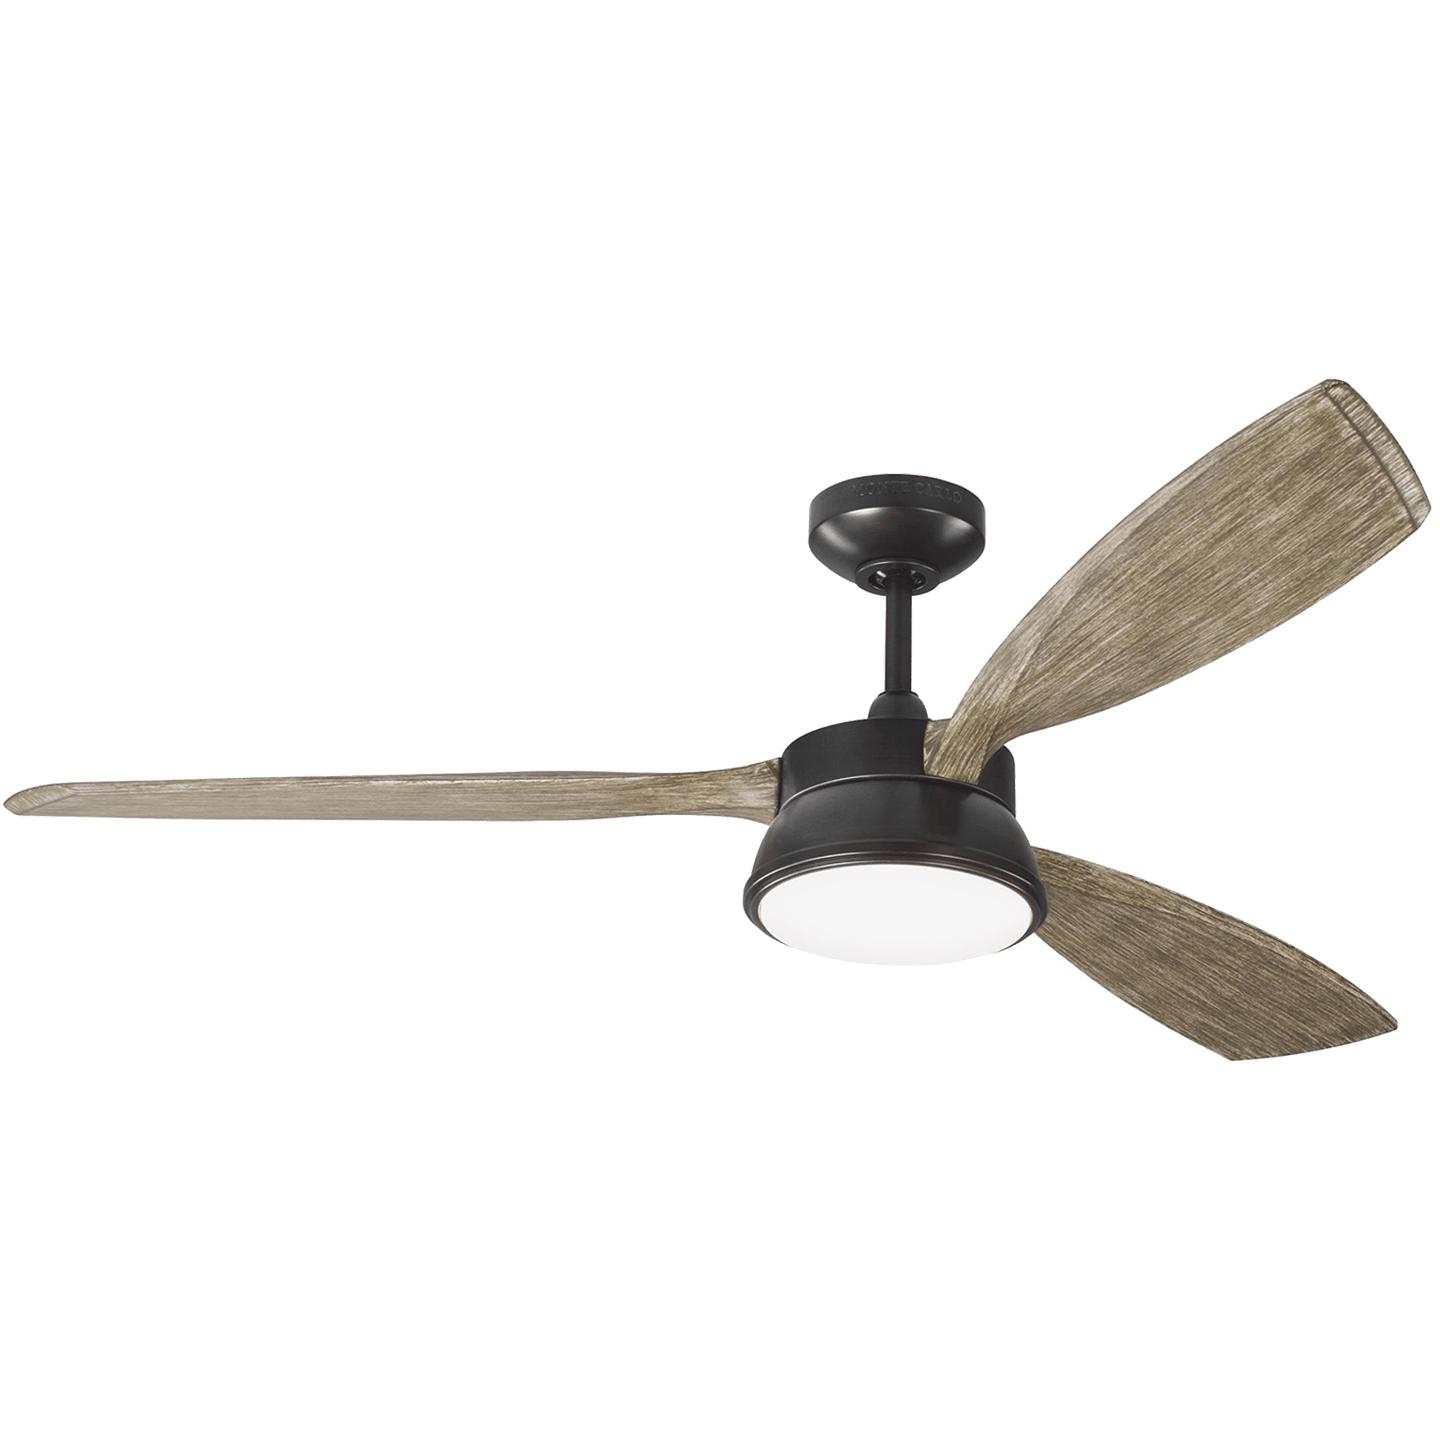 Купить Потолочный вентилятор Destin 57" LED Ceiling Fan в интернет-магазине roooms.ru